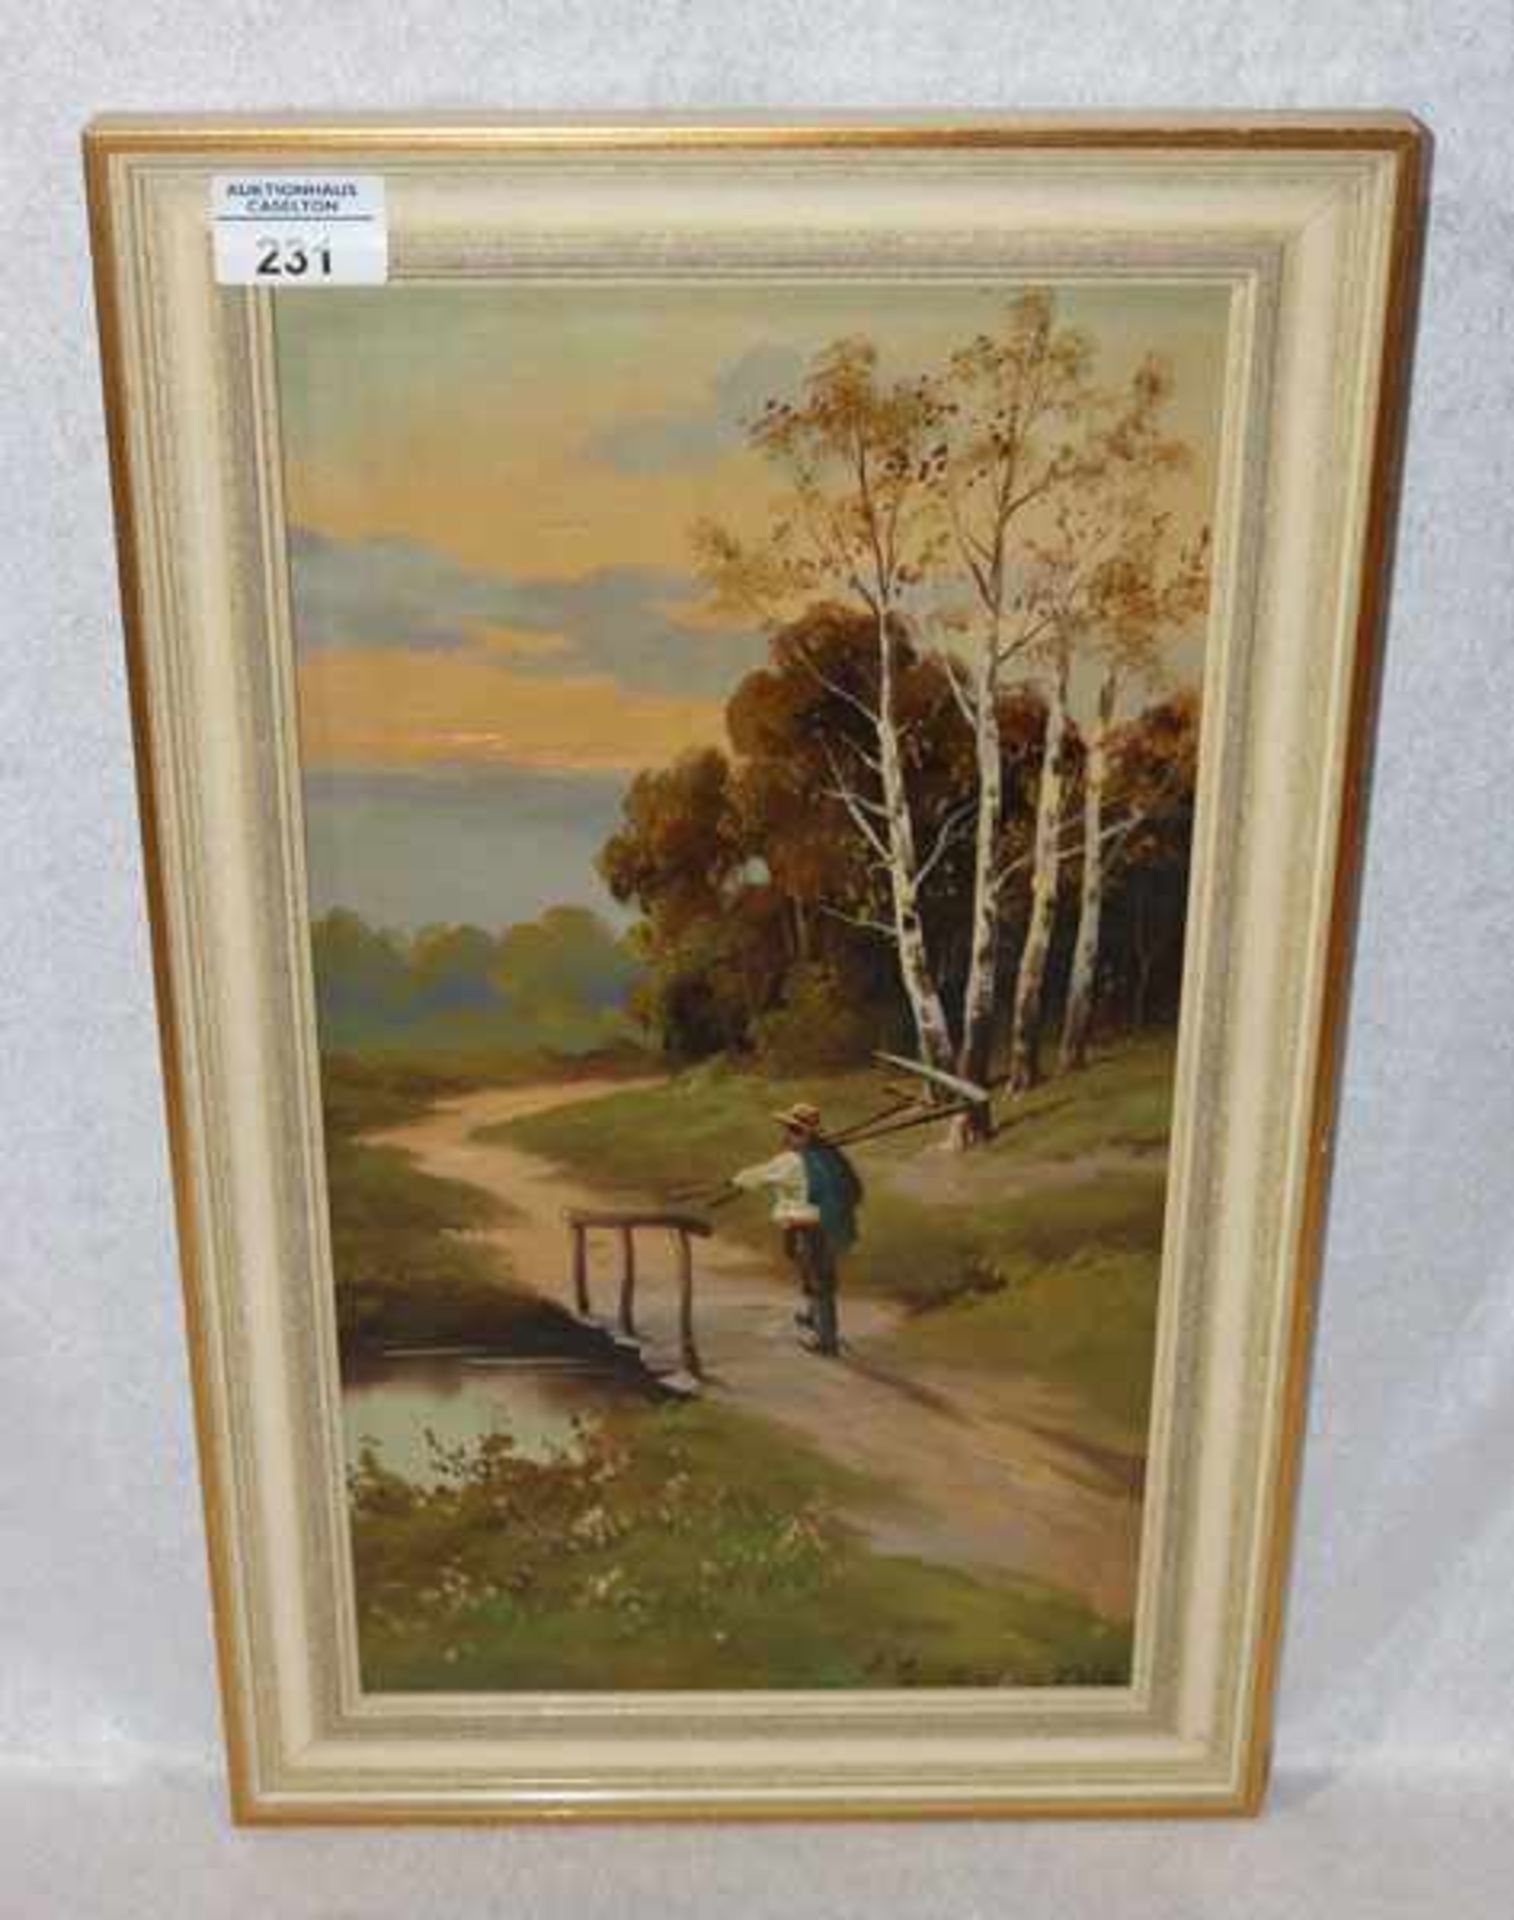 Gemälde ÖL/Malkarton 'Landschafts-Szenerie mit Bauer', monogrammiert A. M. Grodn ? 1919,